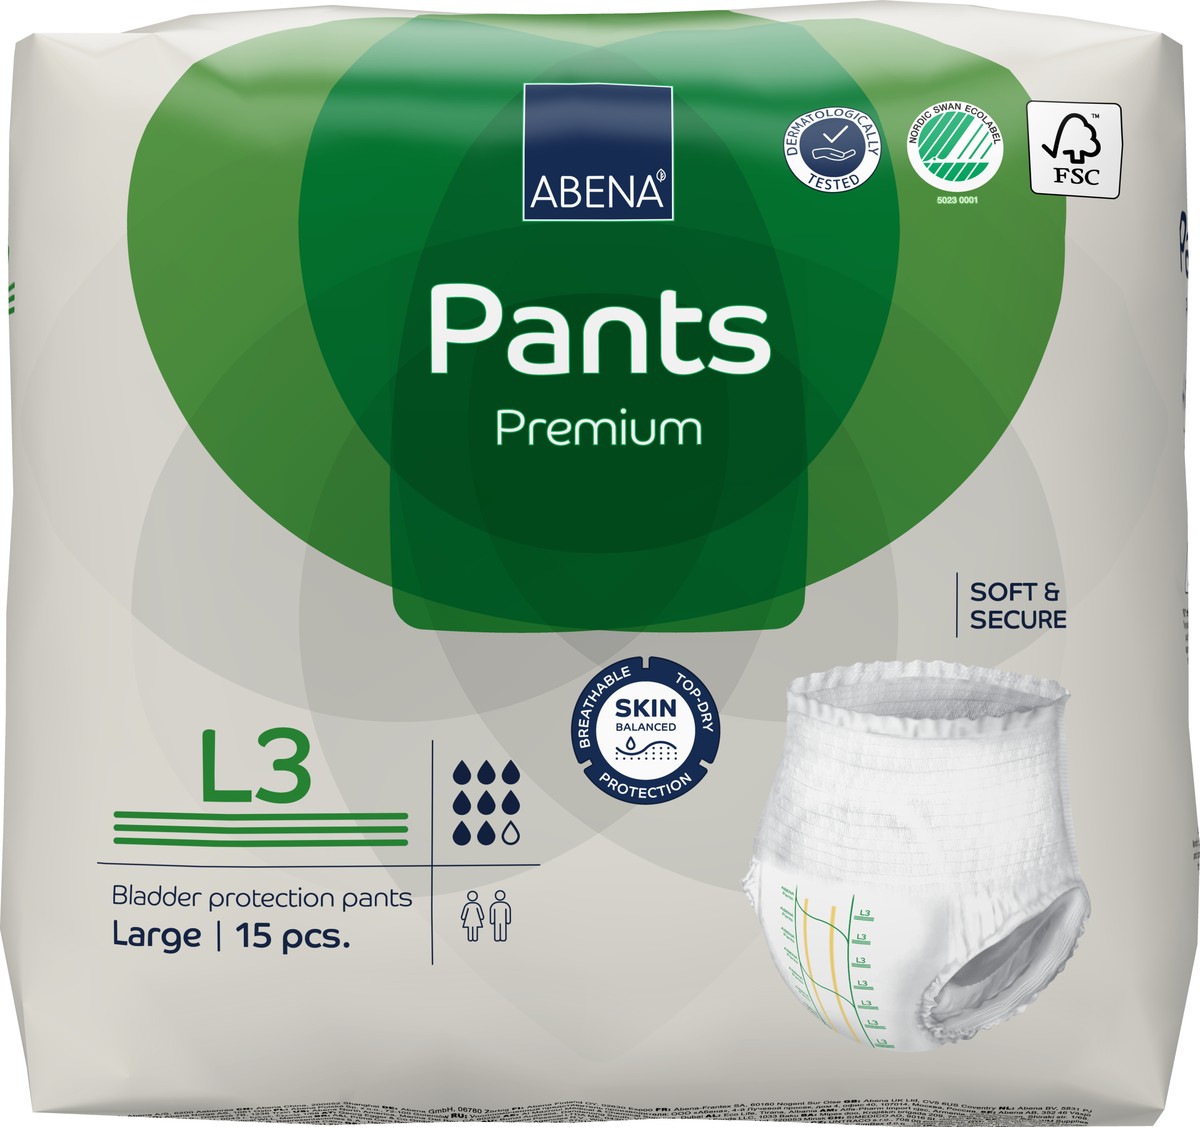 Foto do produto Fralda Abena Pants Premium Calça Tam. L3 C/ 15 UNID Ref: 41078 - Abena